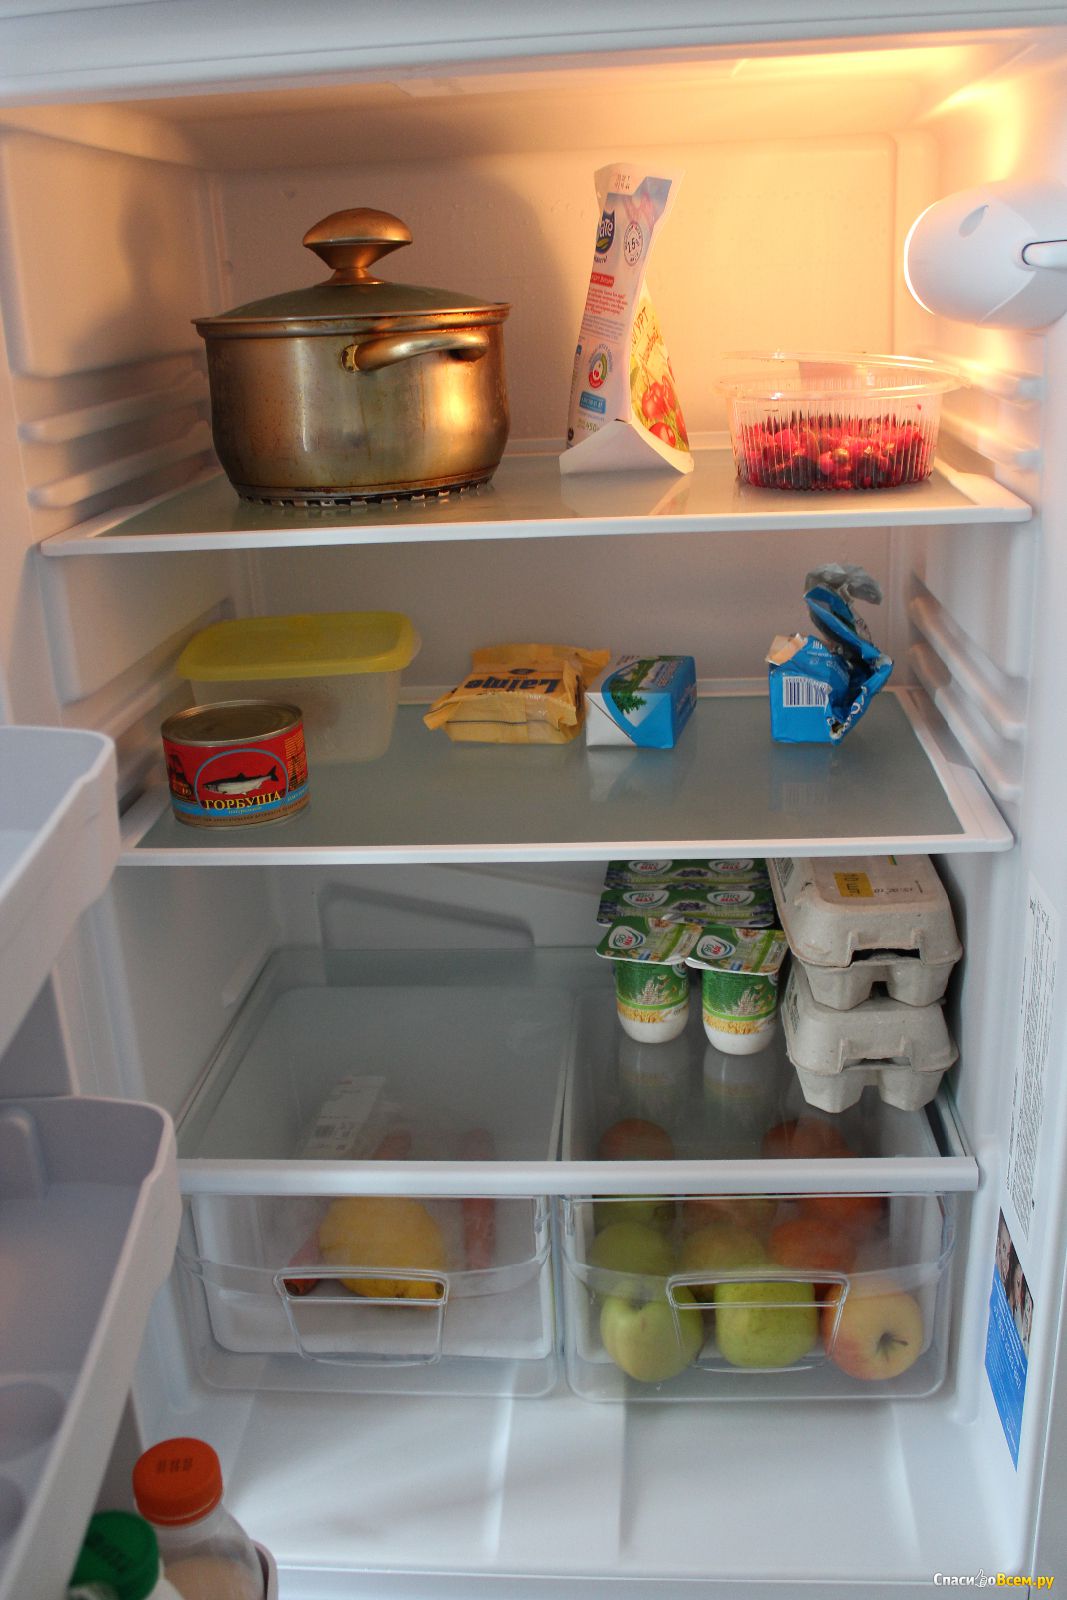 удобное расположение полок в холодильнике